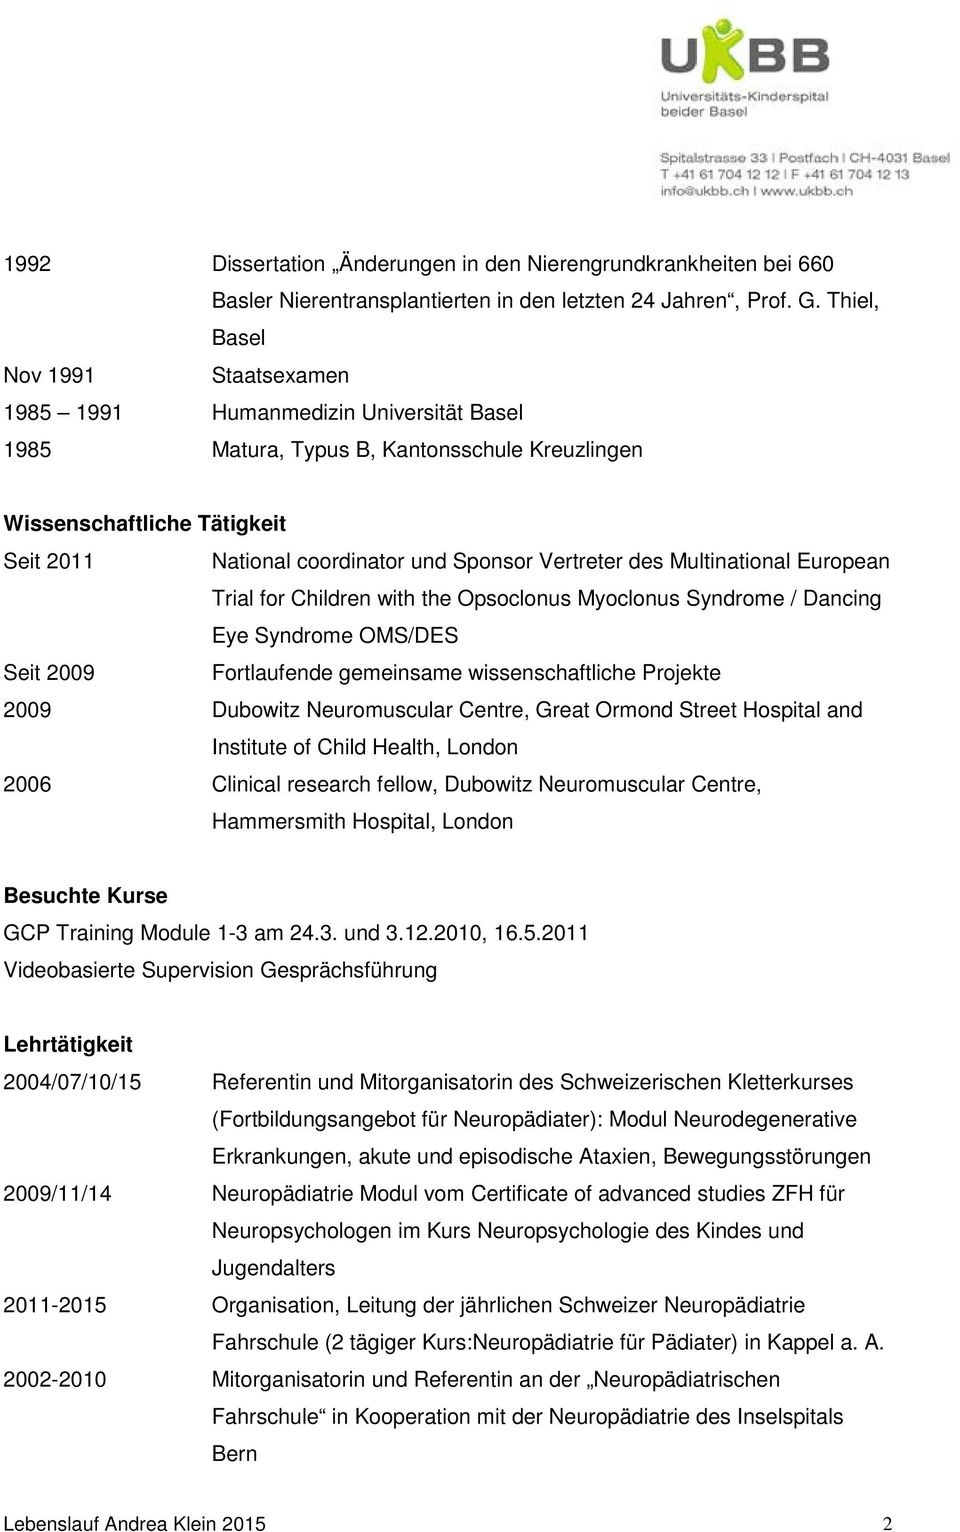 Vertreter des Multinational European Trial for Children with the Opsoclonus Myoclonus Syndrome / Dancing Eye Syndrome OMS/DES Seit 2009 Fortlaufende gemeinsame wissenschaftliche Projekte 2009